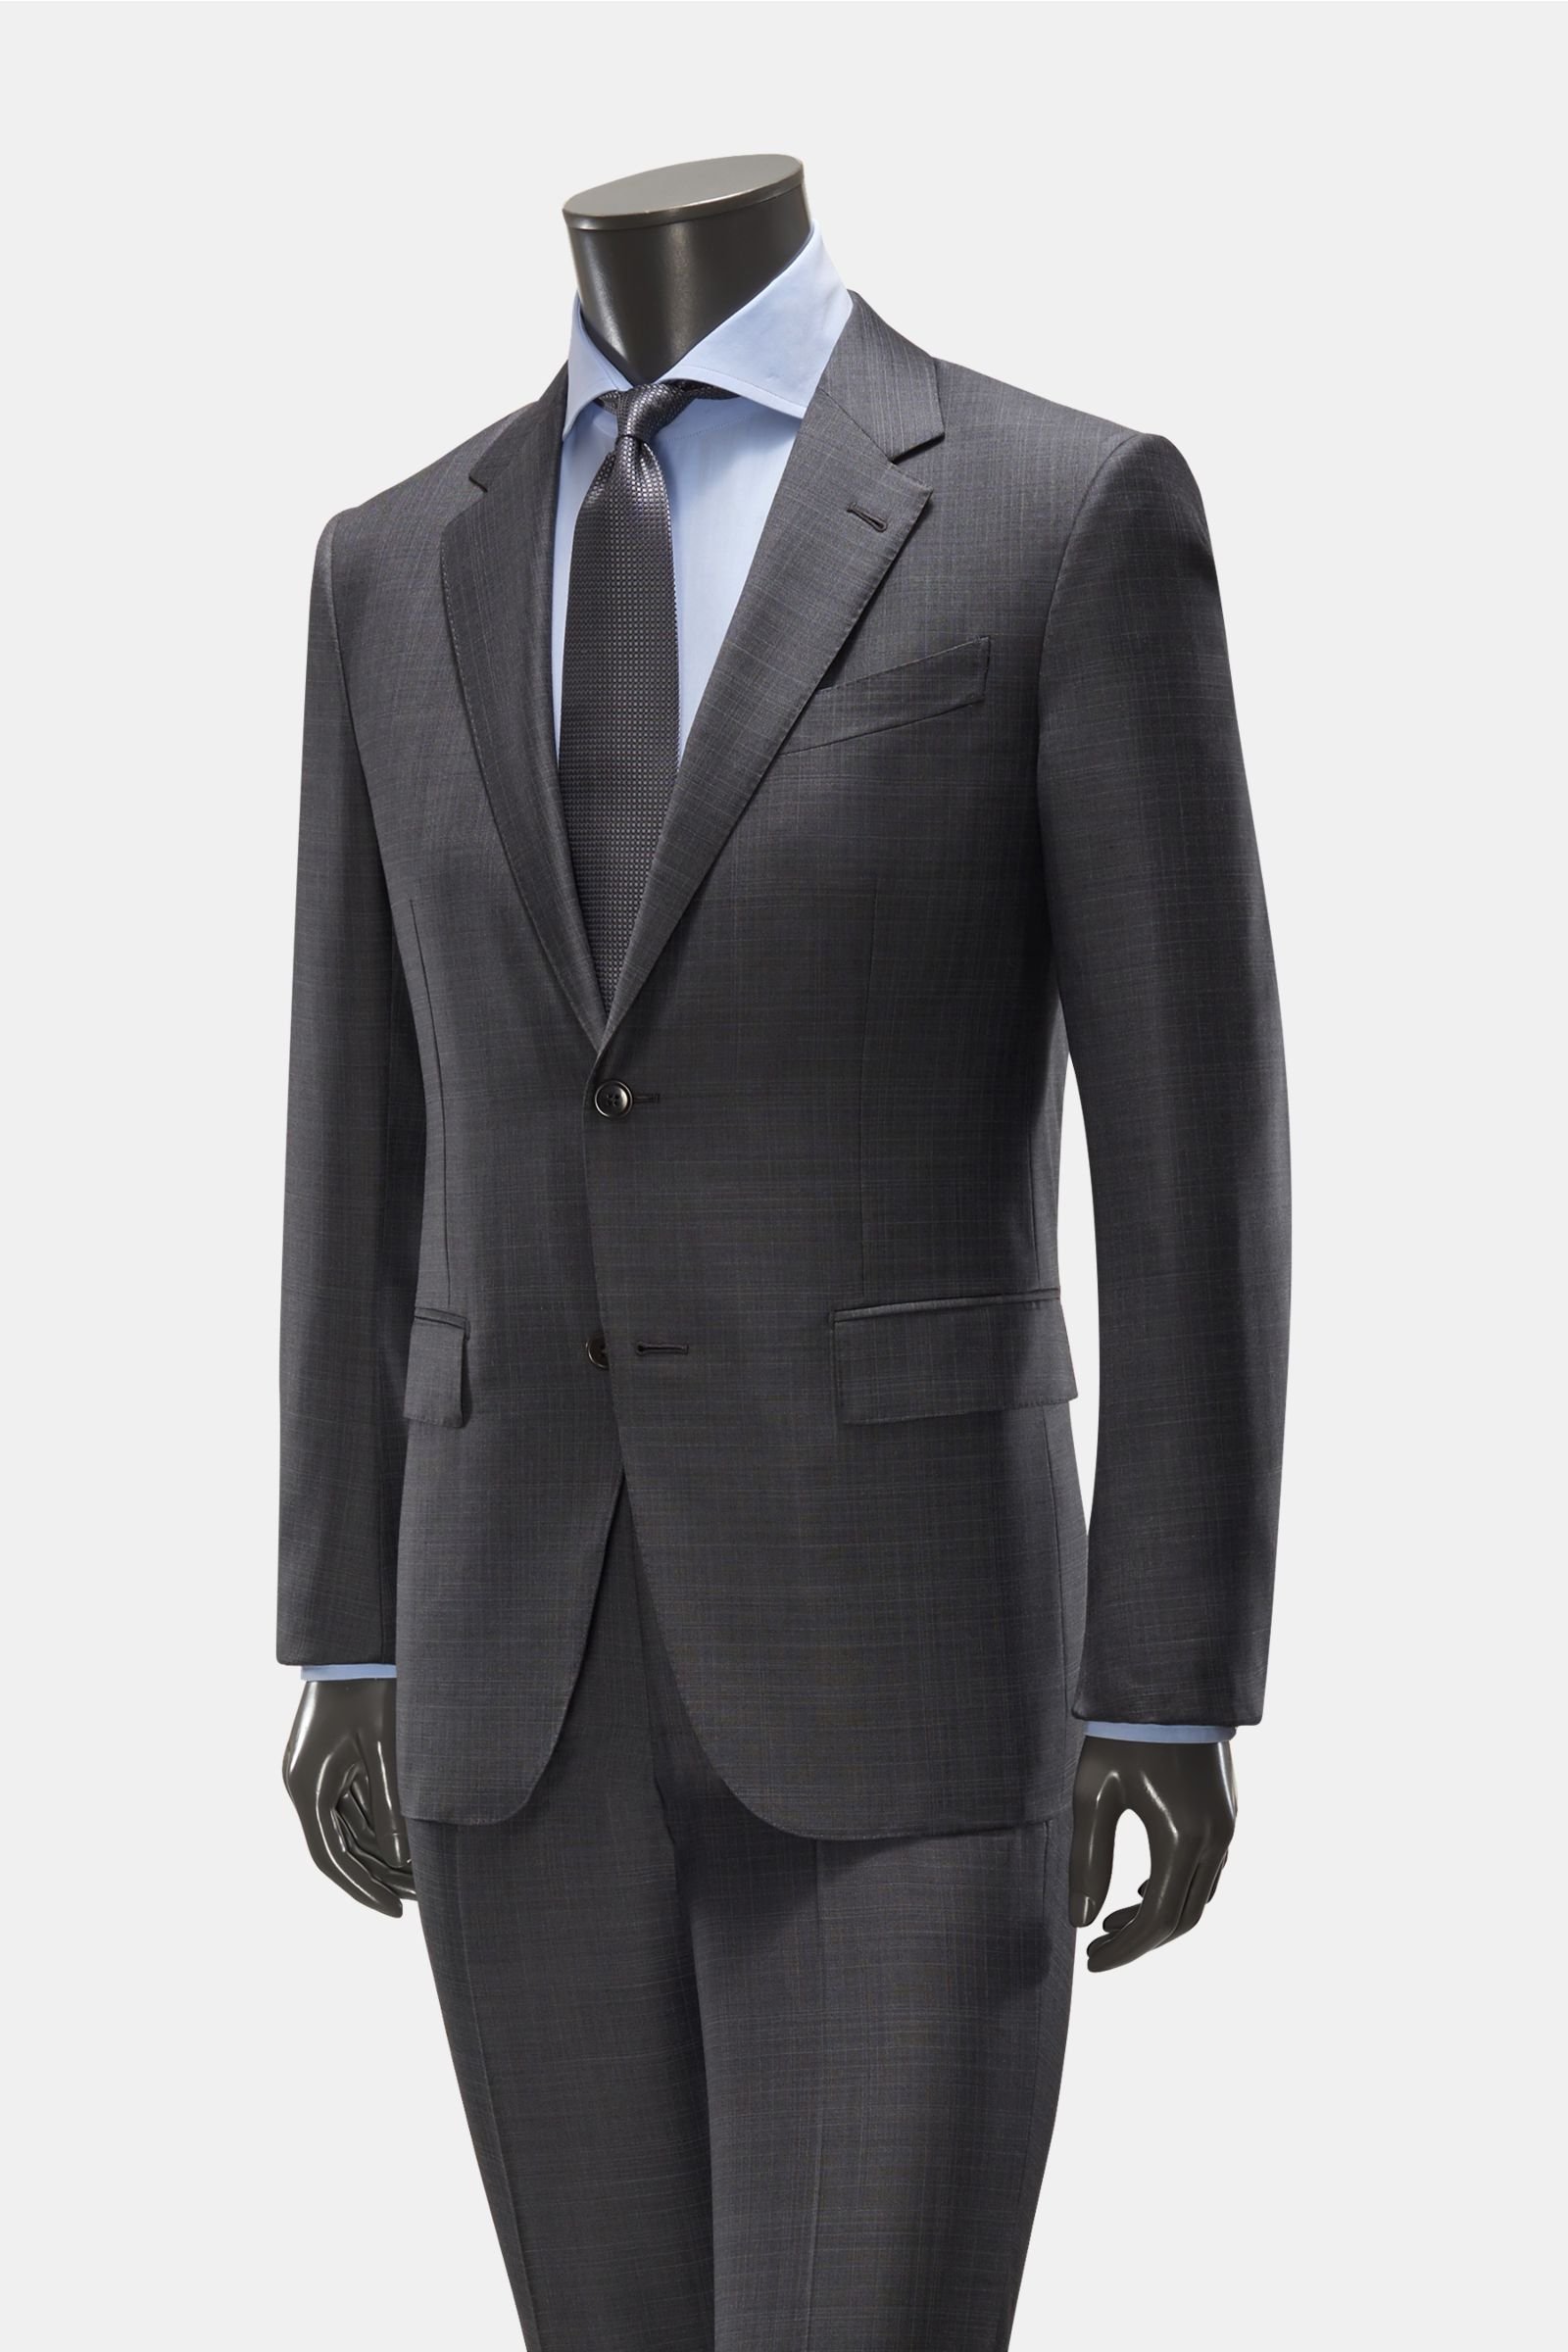 Suit 'Milano Easy' dark grey